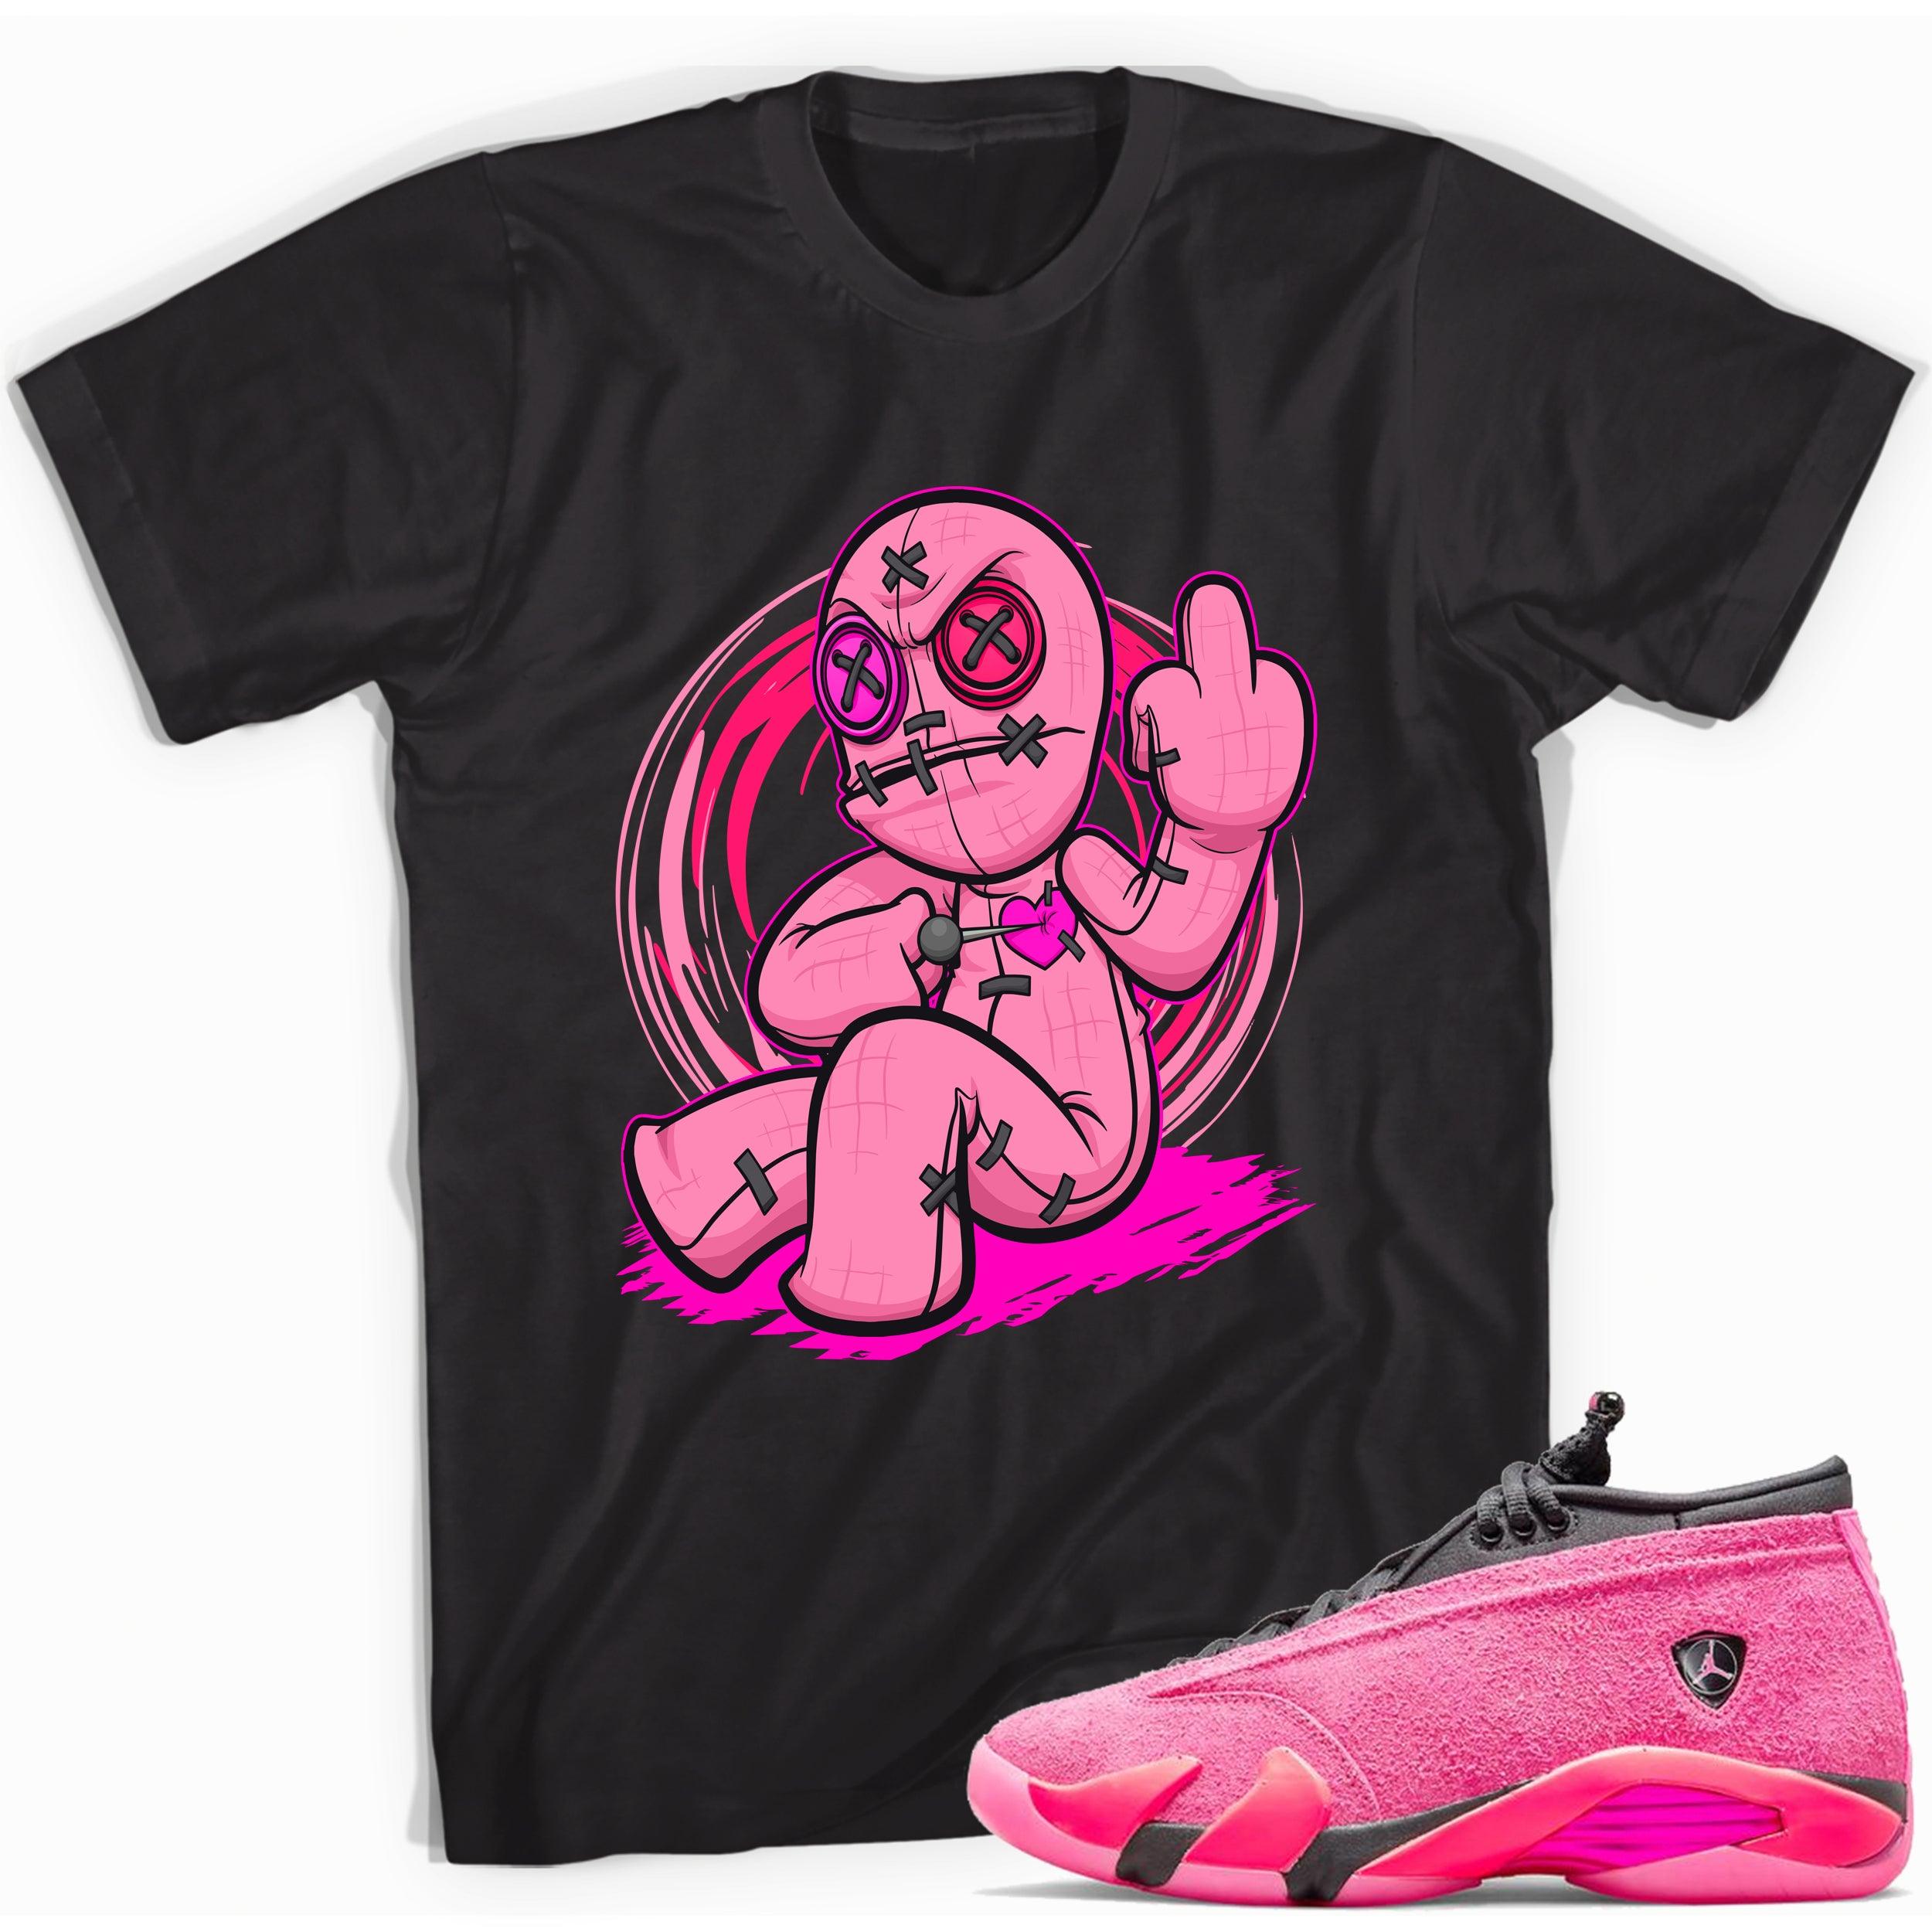 Black Voodoo Doll Shirt Jordan 14 Shocking Pink photo